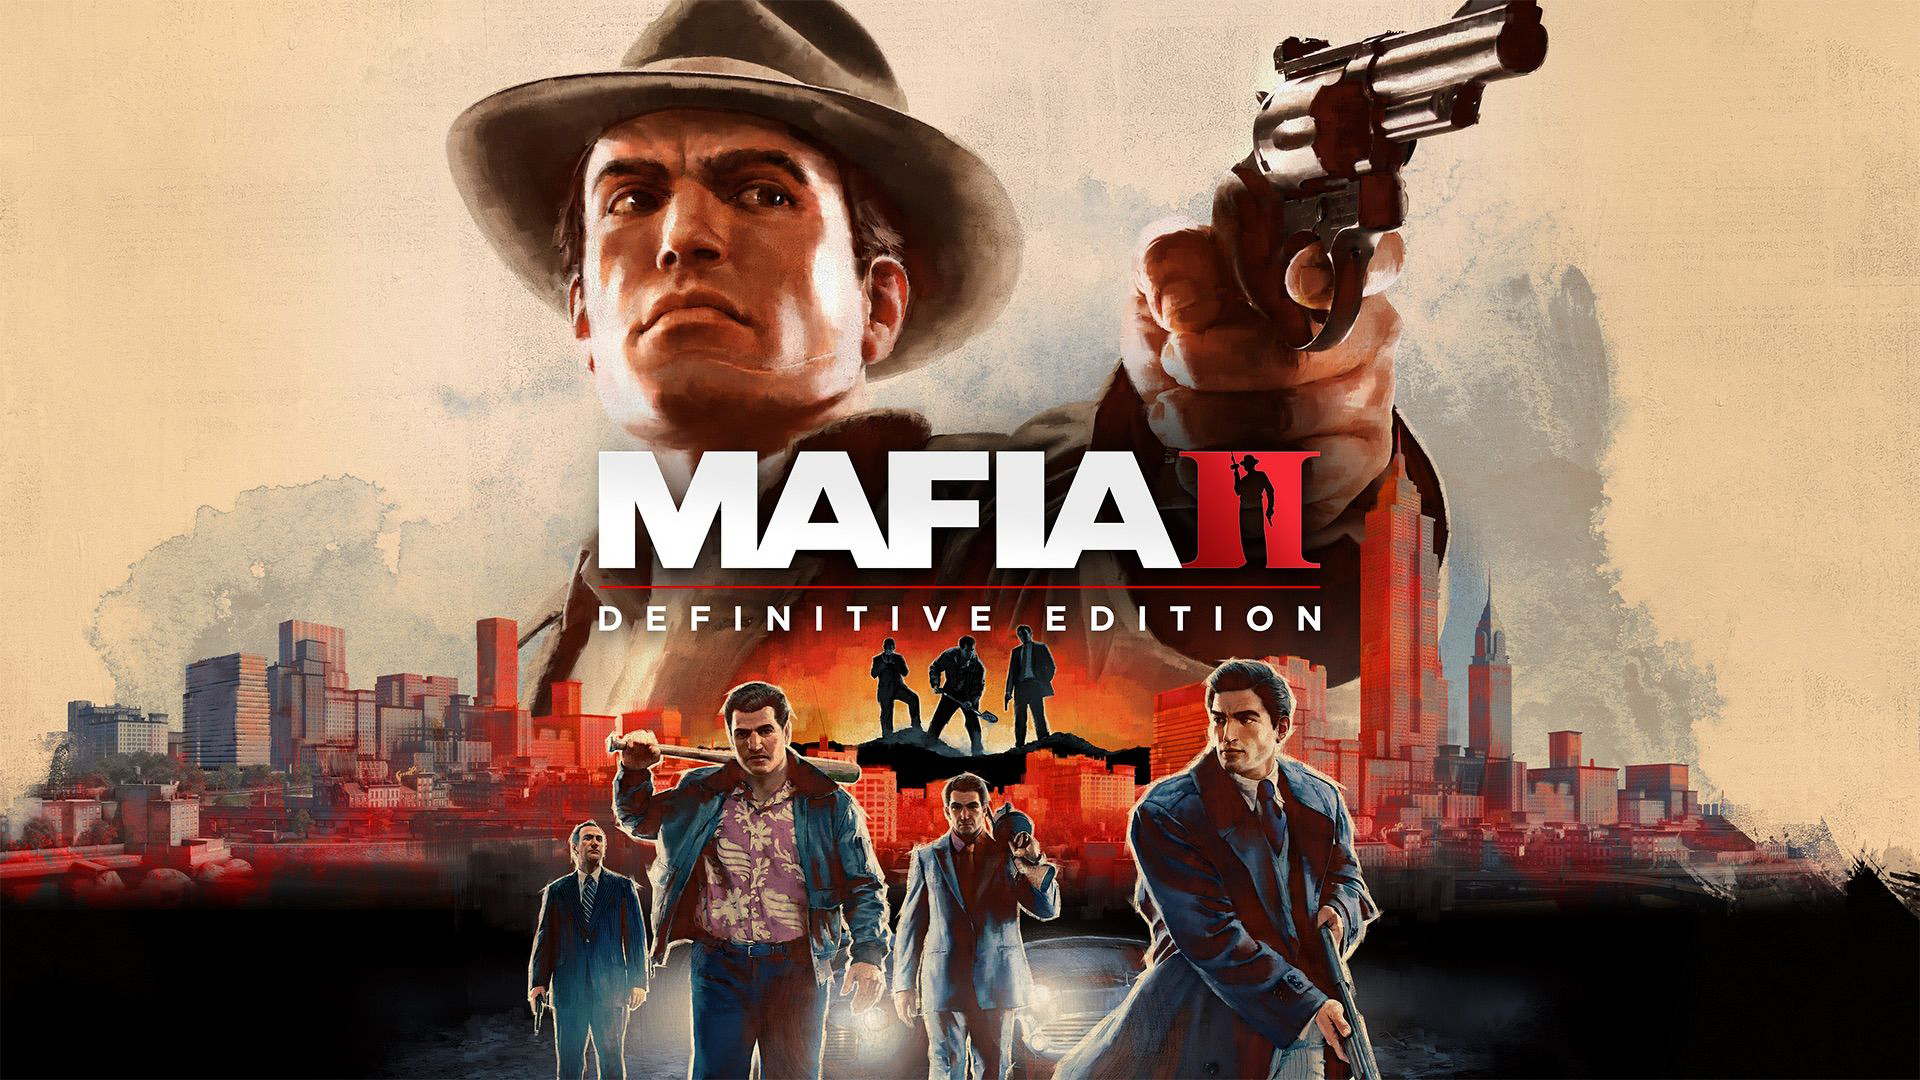 Mafia 2 Ps3 video game